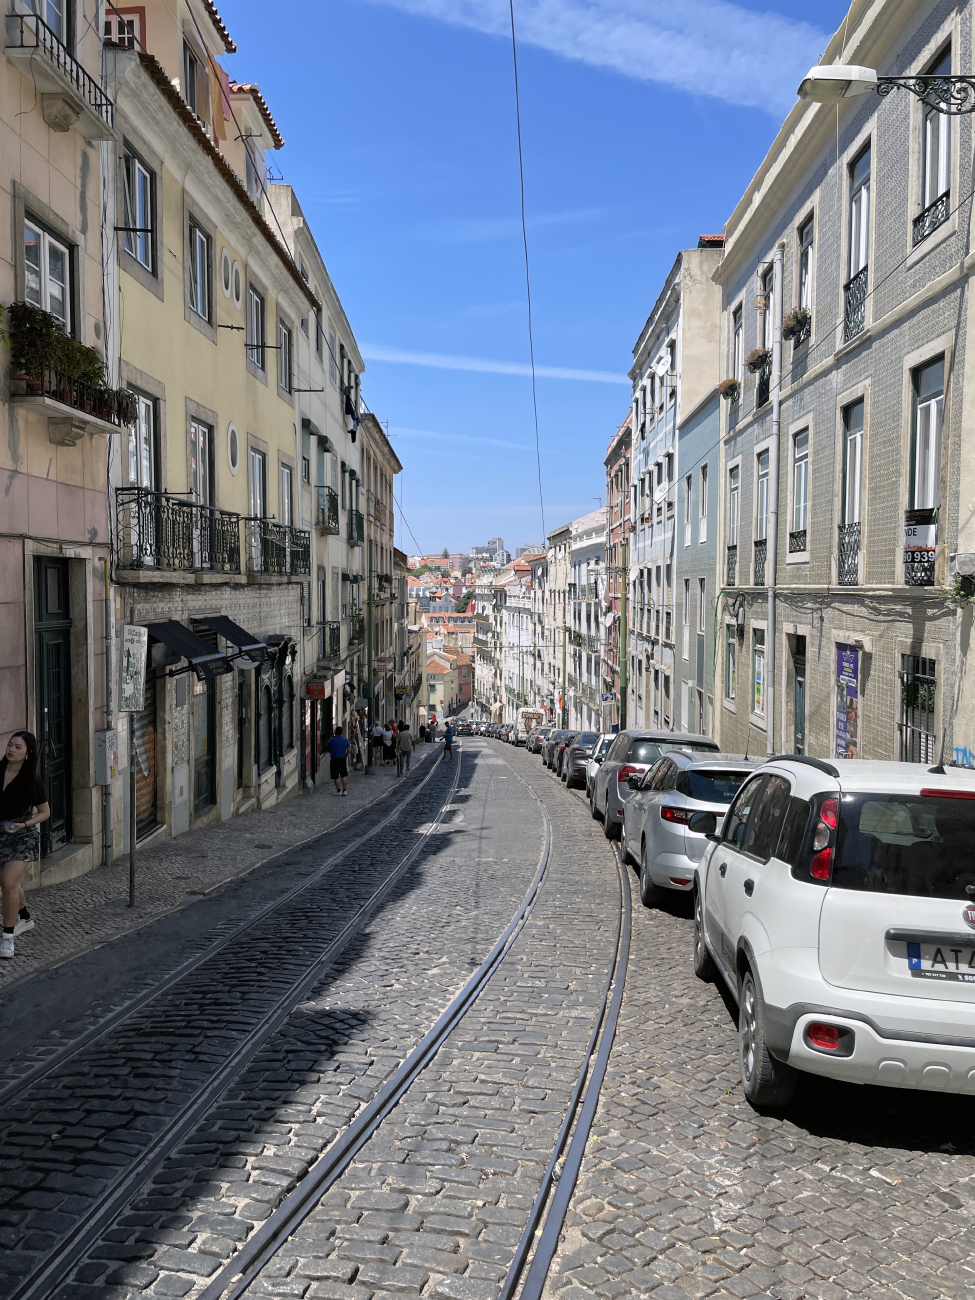 Лиссабон — Трамвай — Линии и инфраструктура